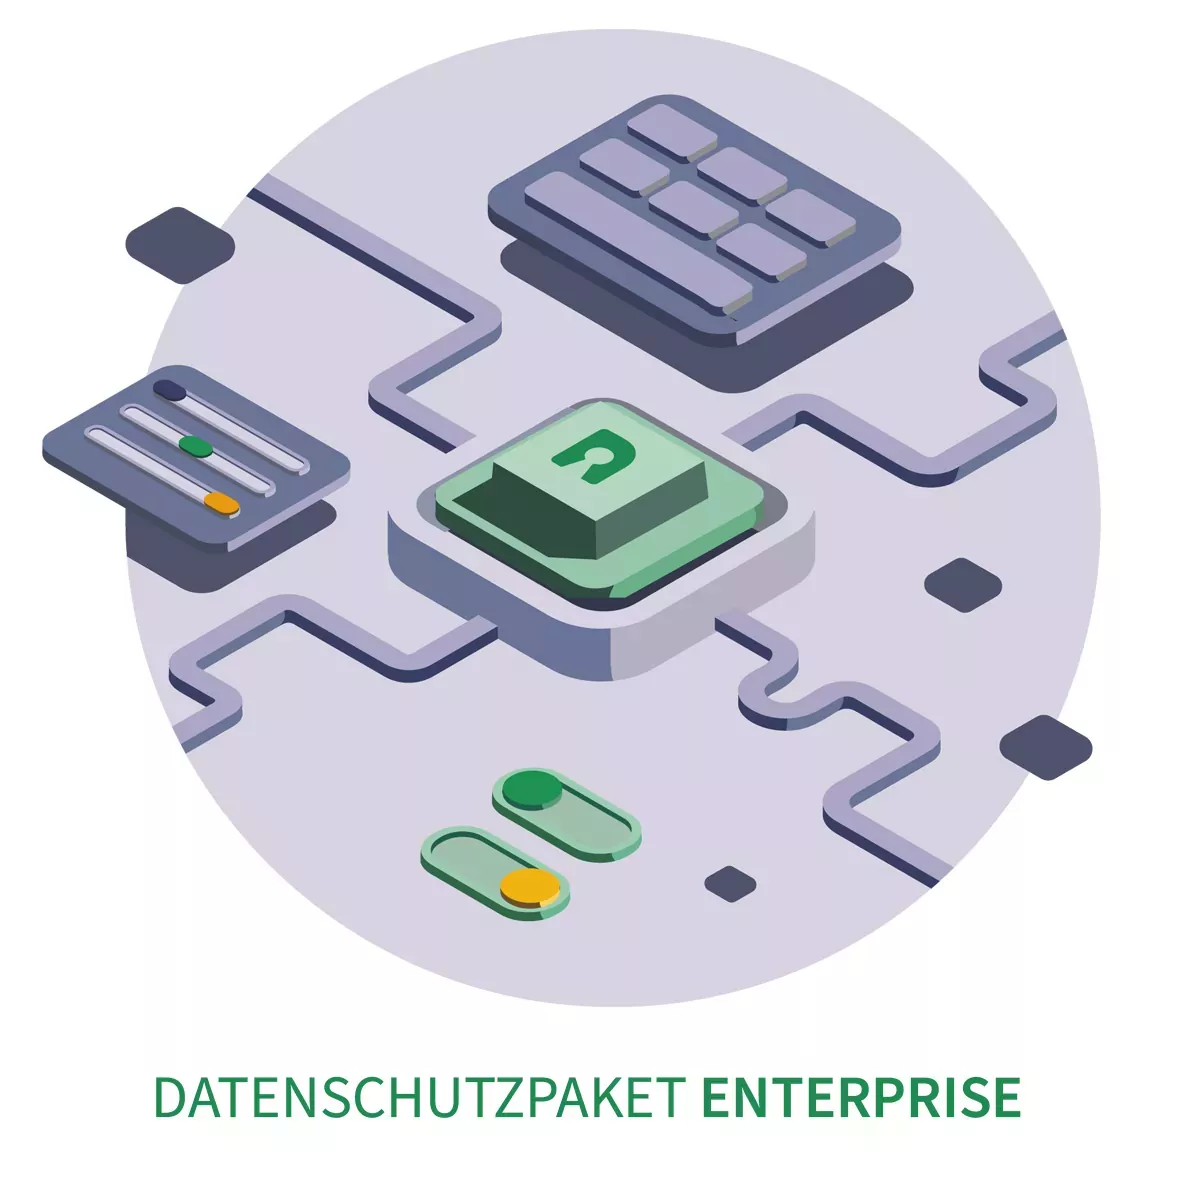 Datenschutzpaket Enterprise